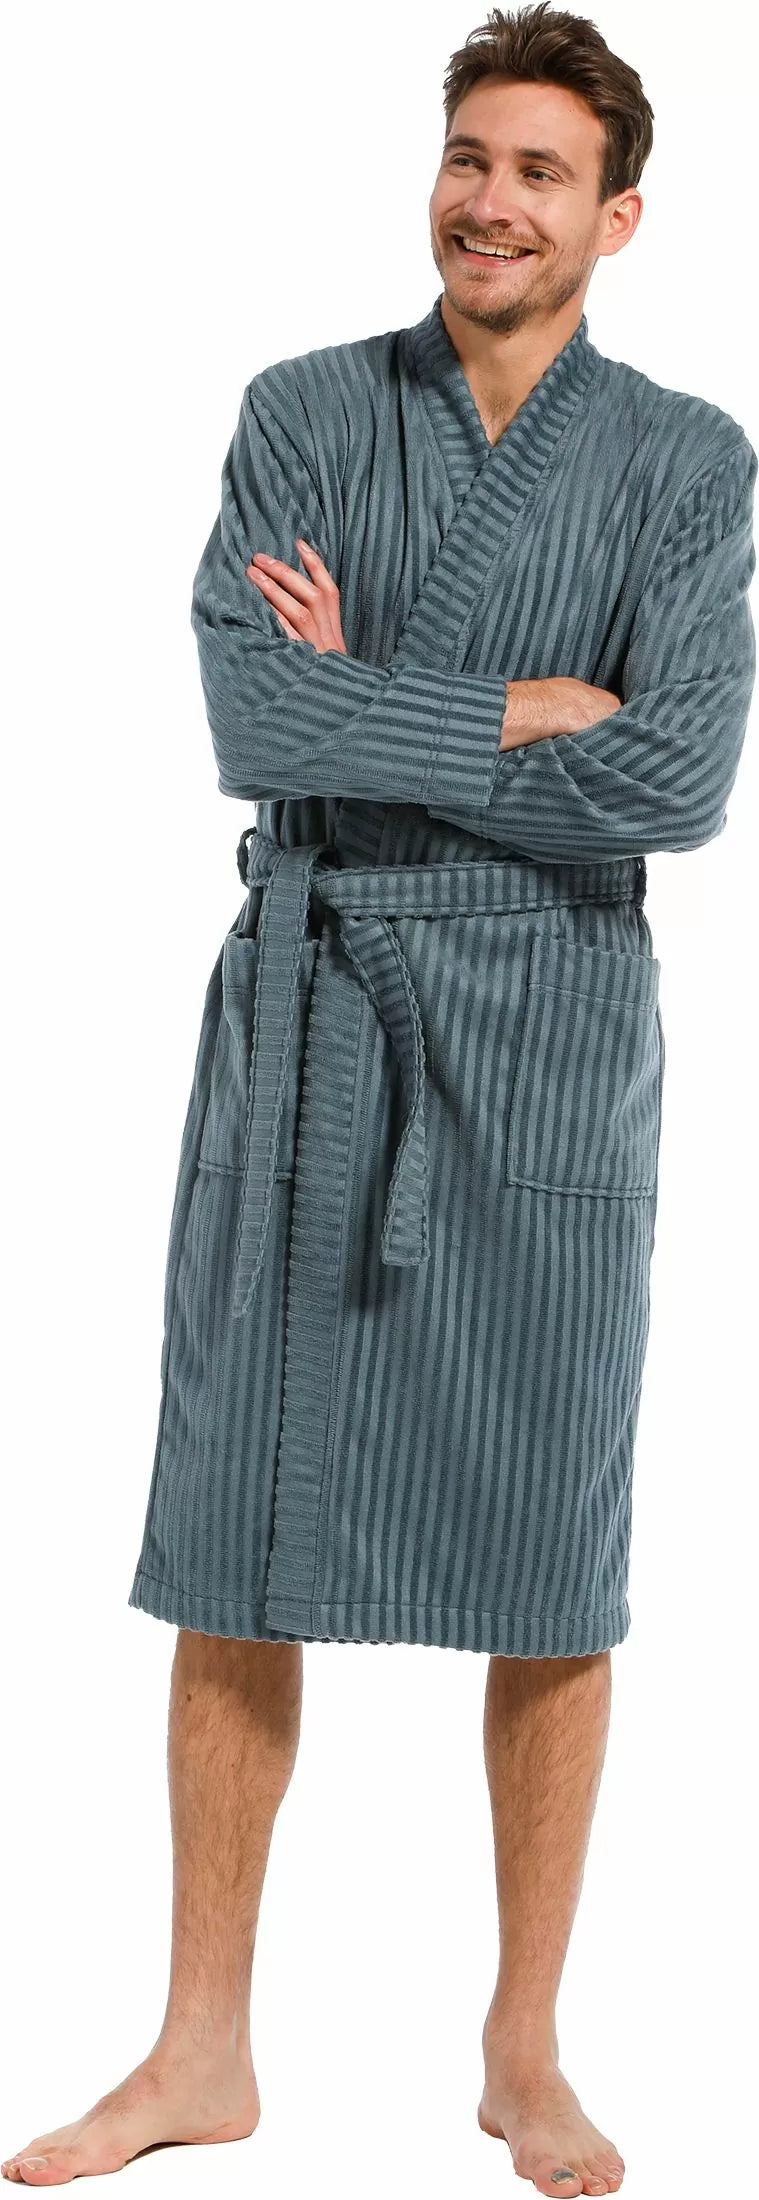 Pastunette heren badjas met omslag 7399-651-1 - blauw